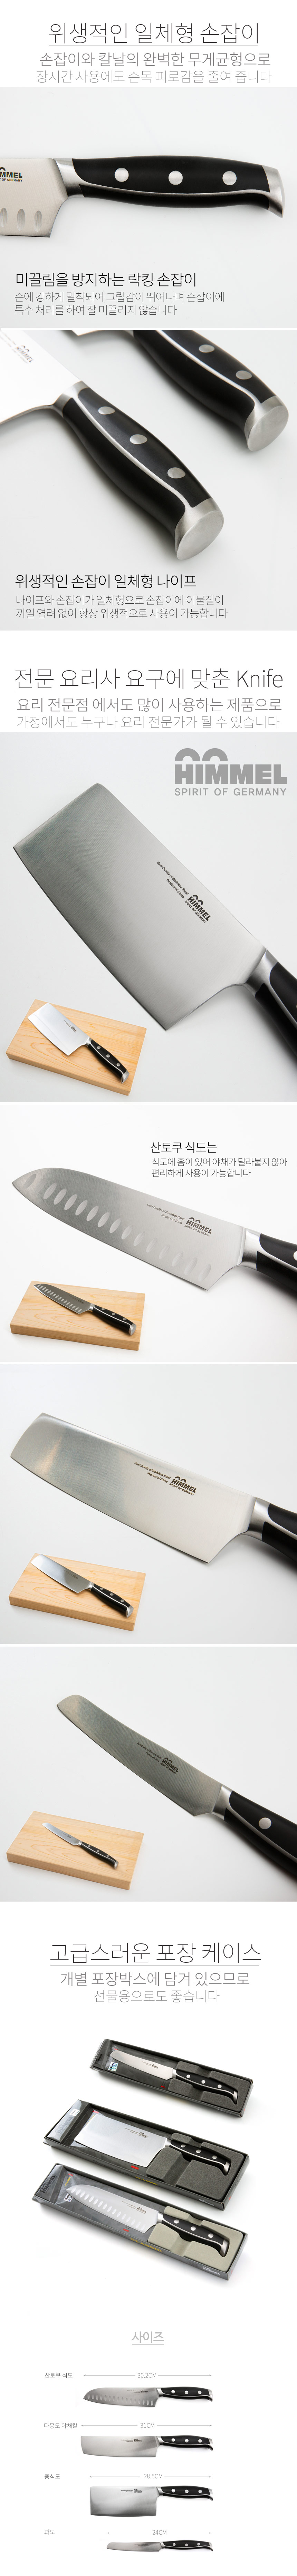 himmelknife02.jpg